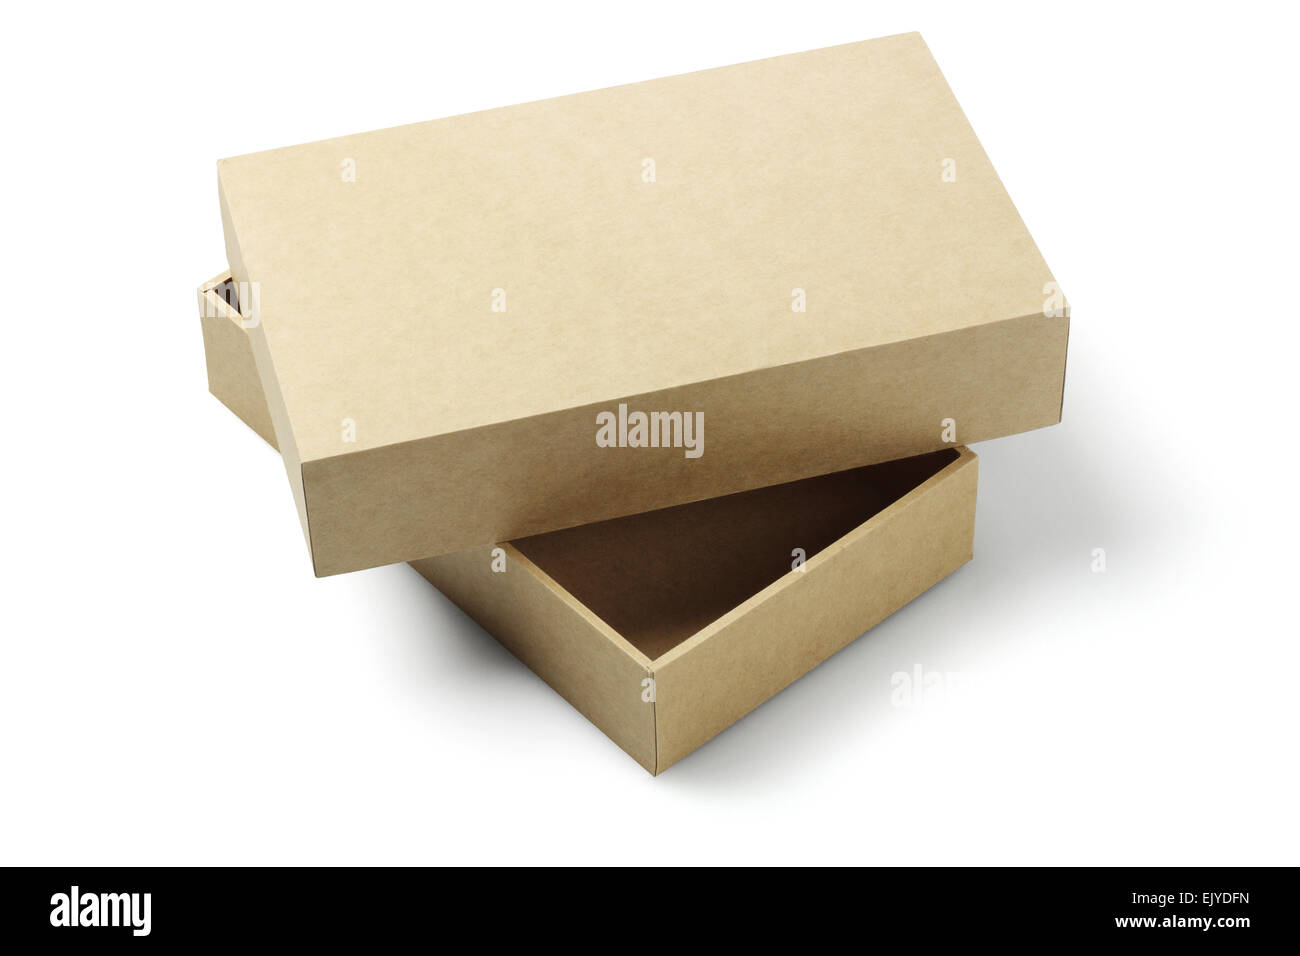 Offenen Karton Verpackung Box auf weißem Hintergrund Stockfoto